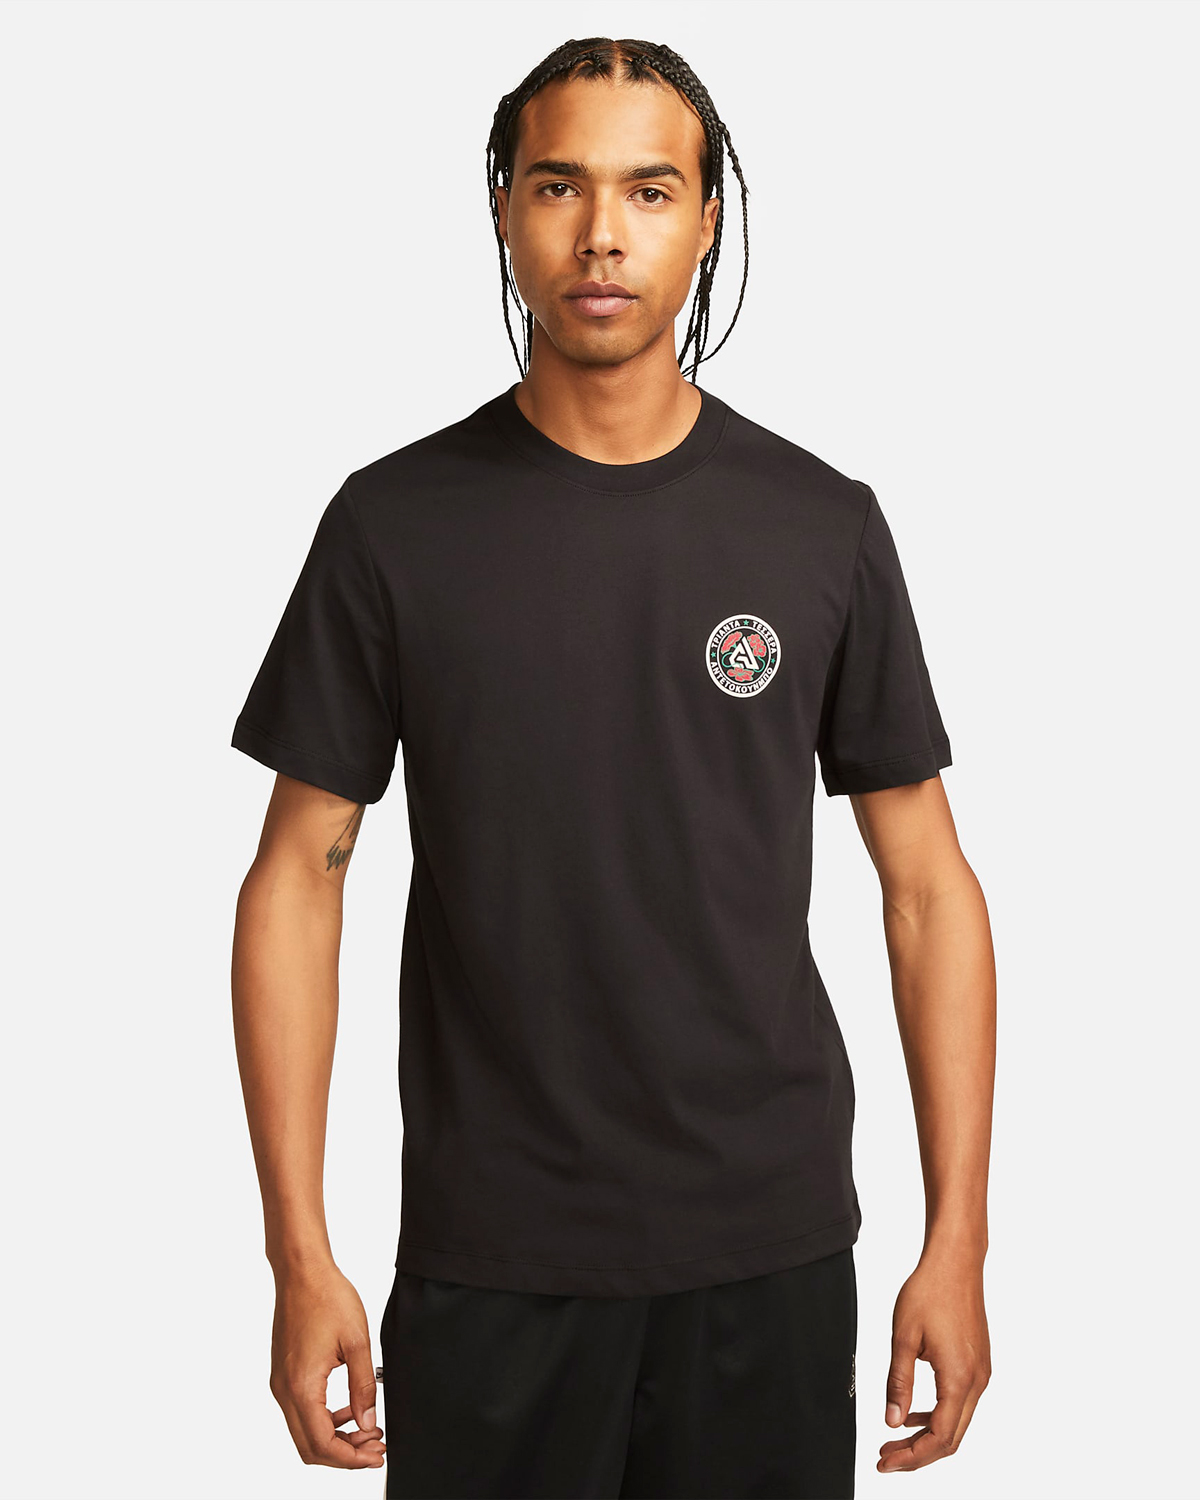 Nike-Freak-5-Giannis-T-Shirt-Black-1